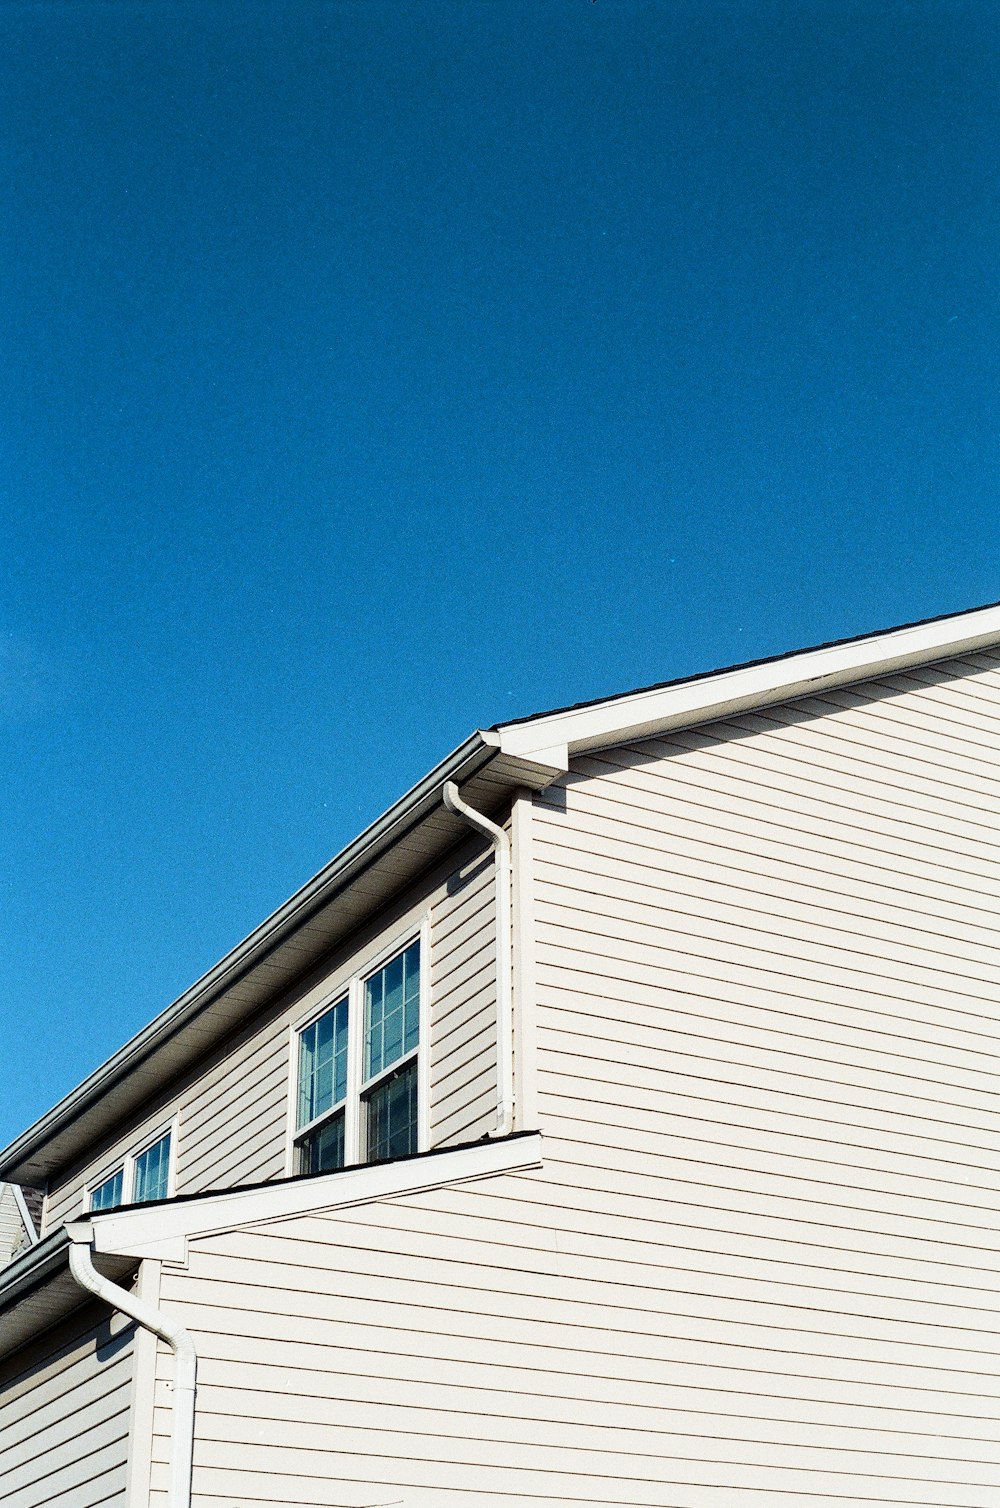 낮 푸른 하늘 아래 하얀 목조 주택